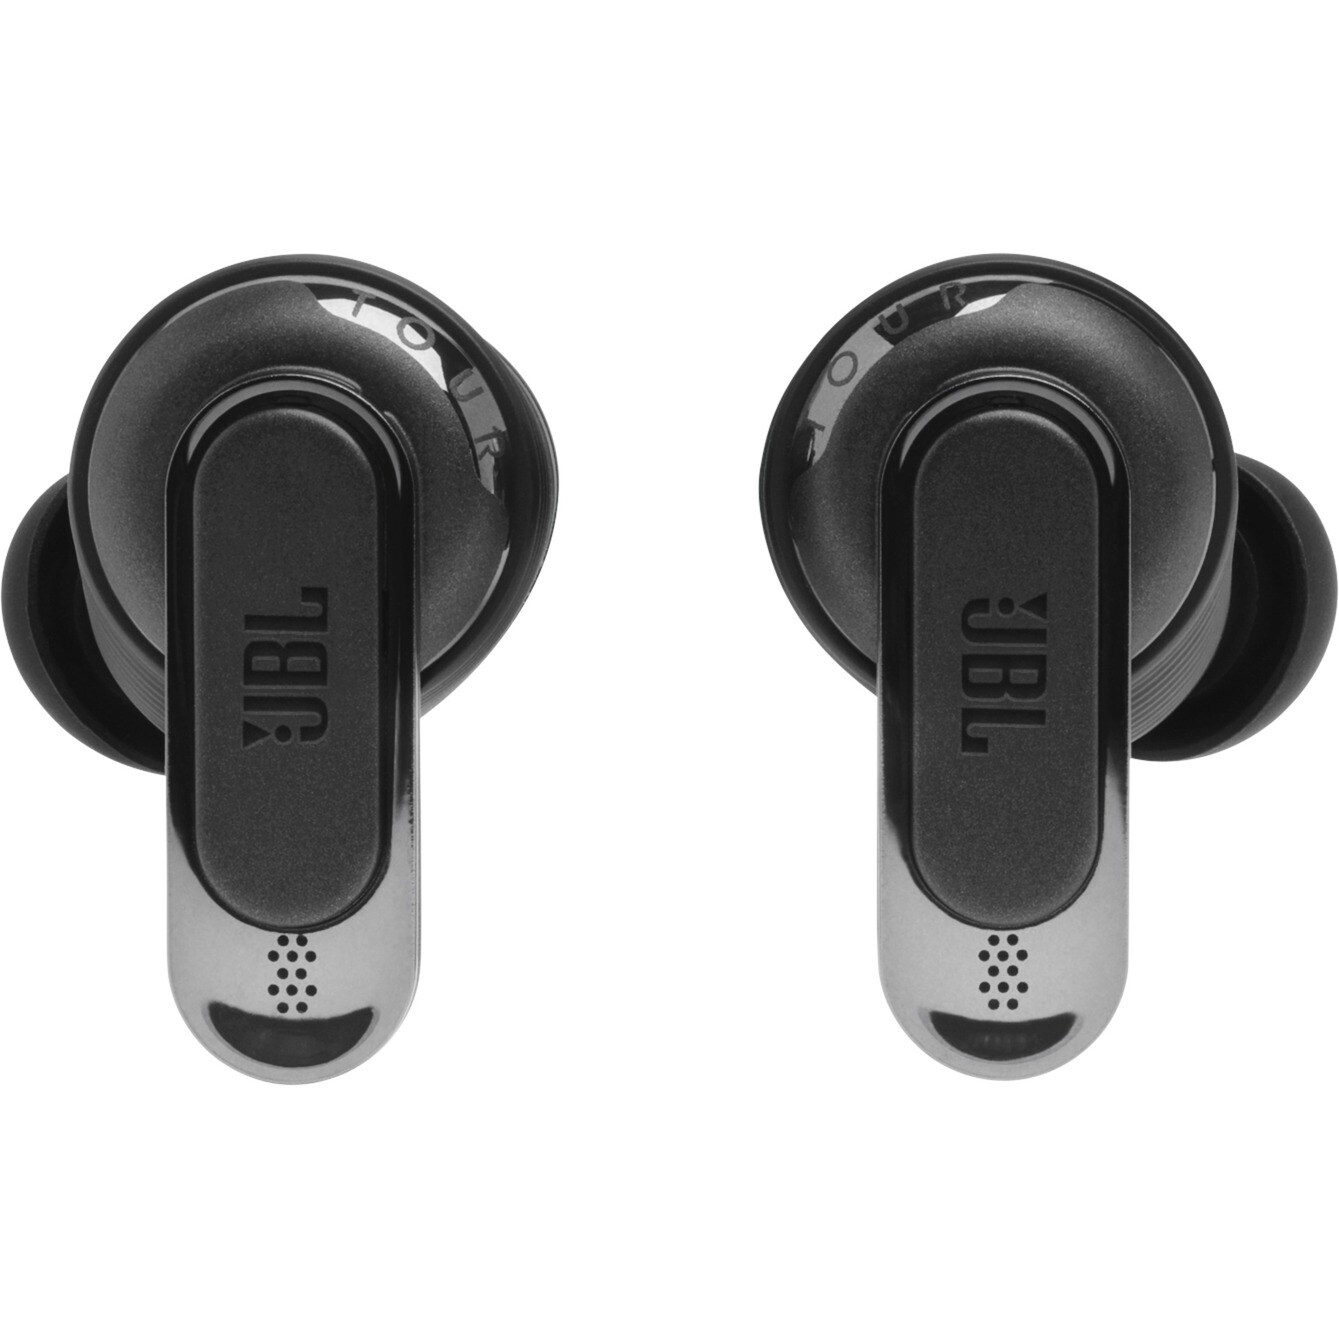 JBL TOUR PRO 2 In-Ear Bluetooth Cyberport schwarz ++ Kopfhörer